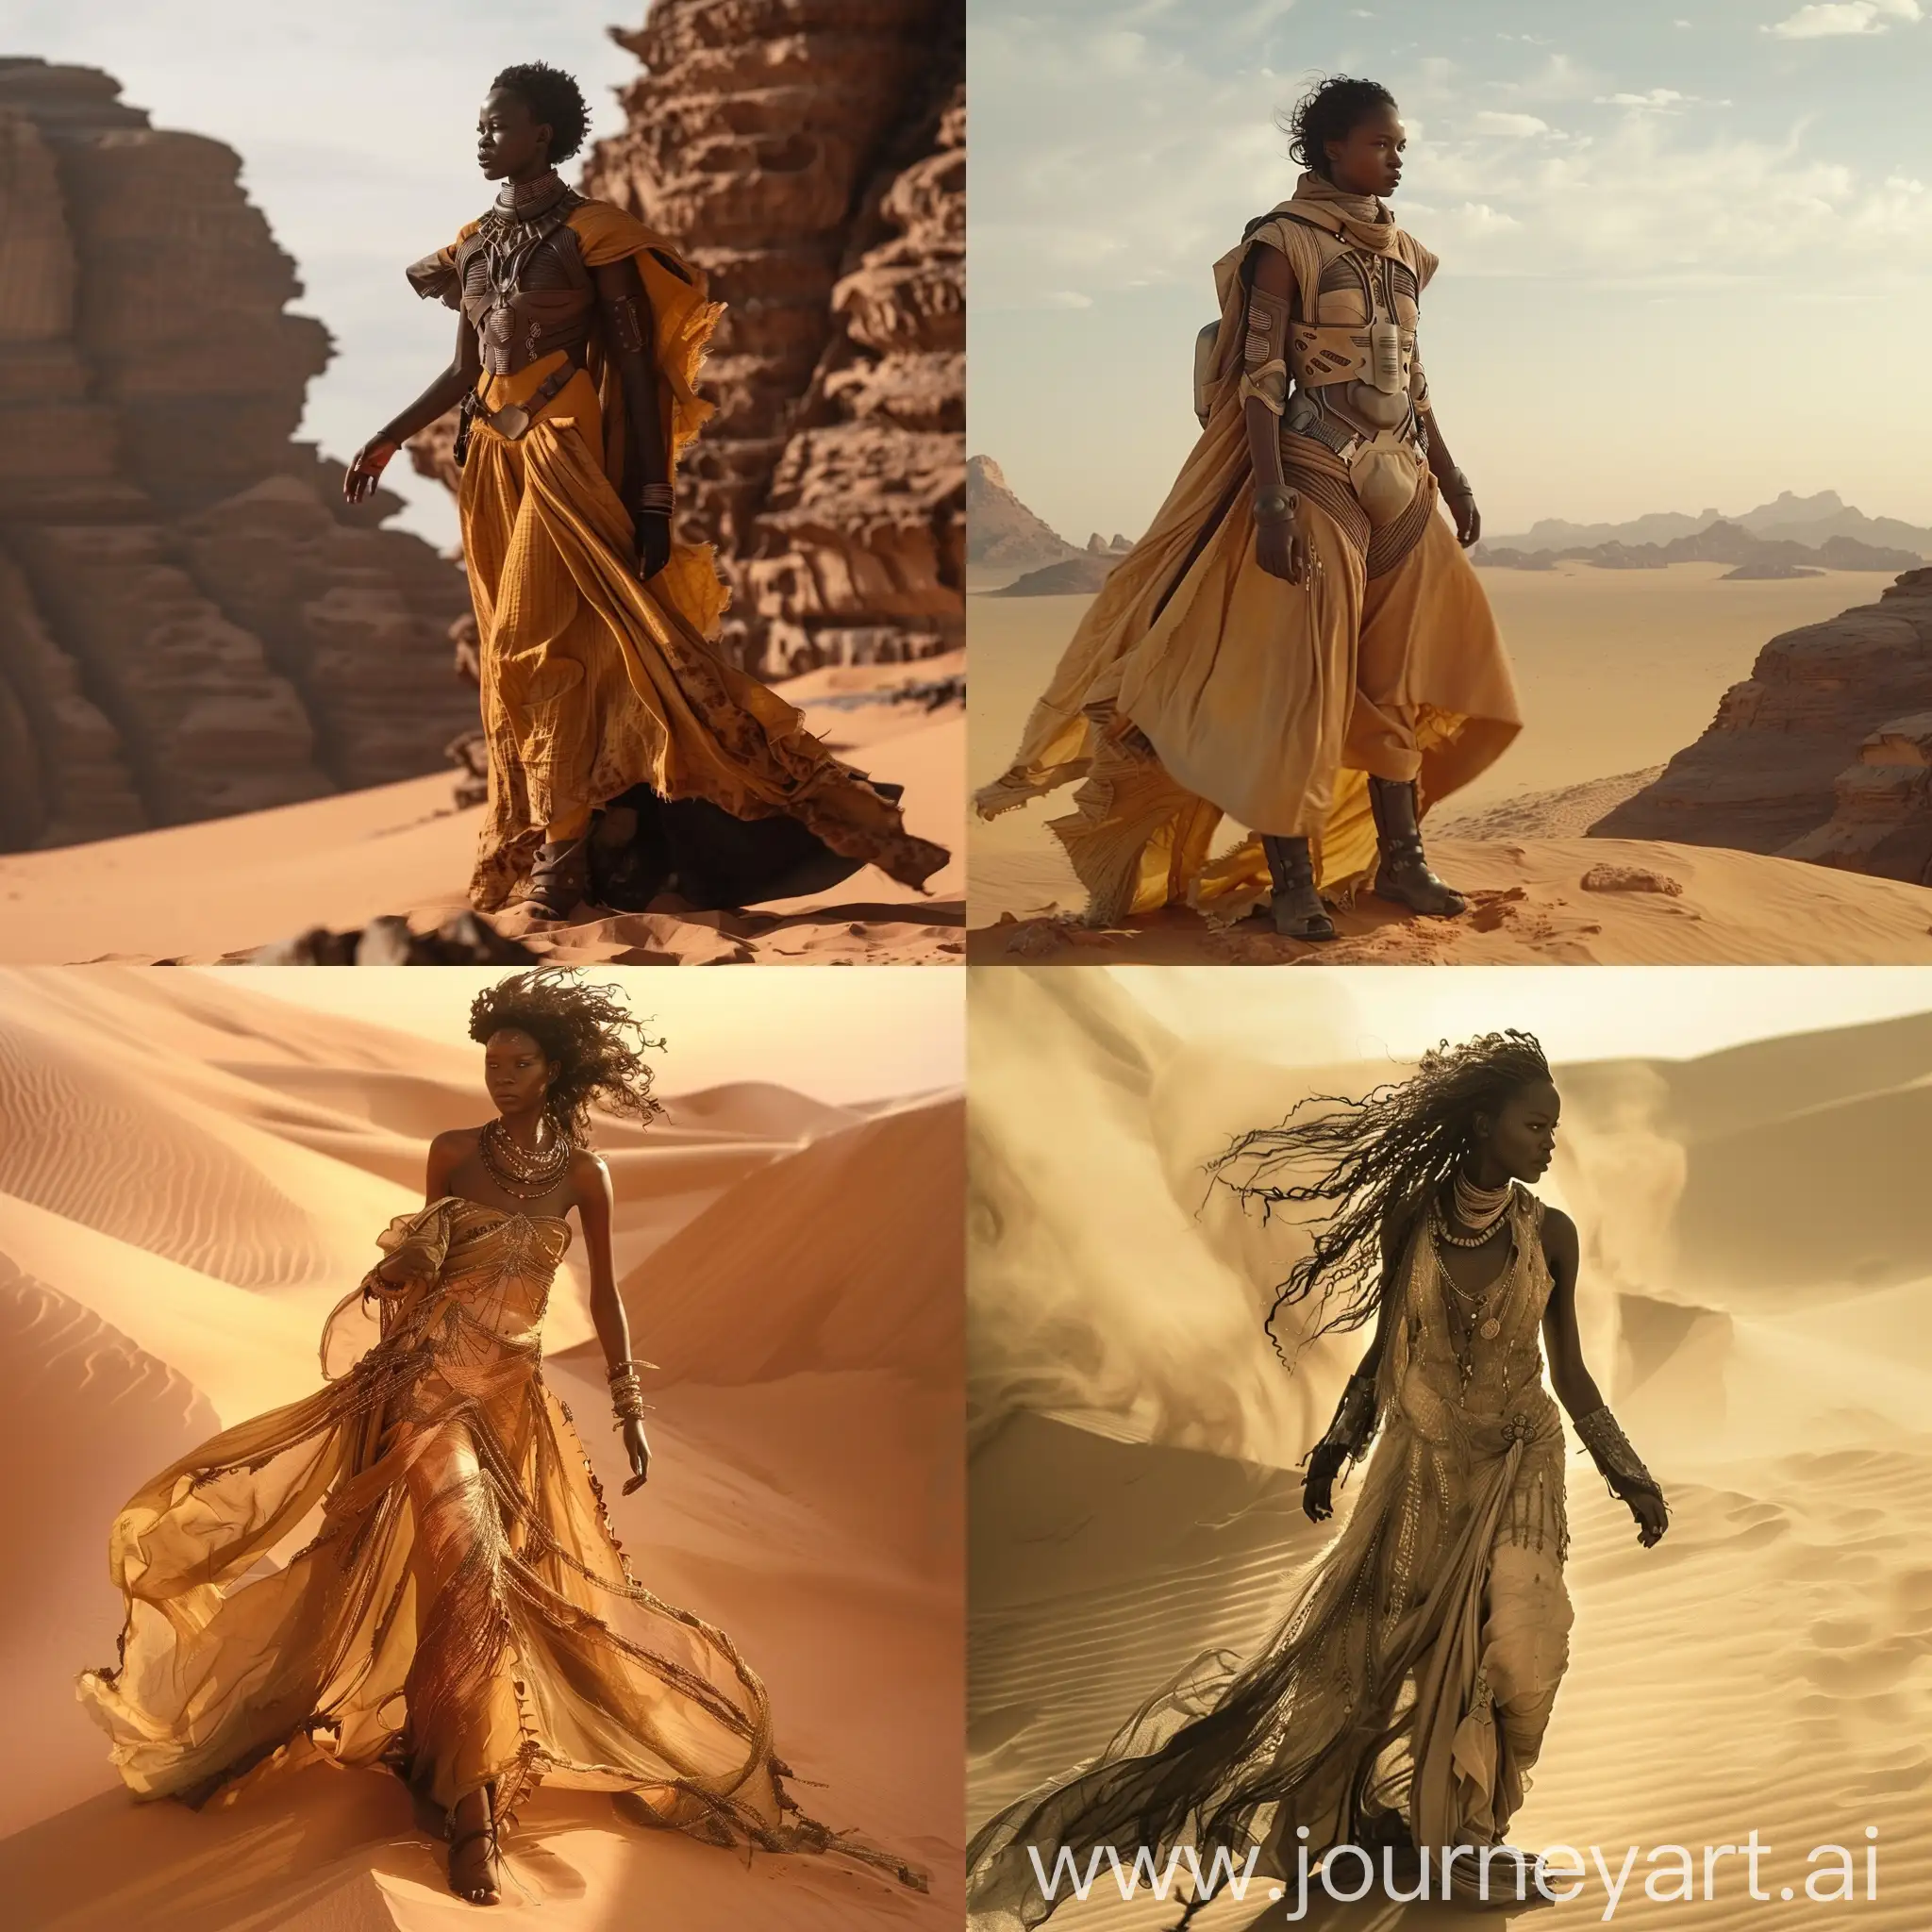 девушка афро внешности стоит в пустыне в пещаном платье по мотивам фильма "Дюна"